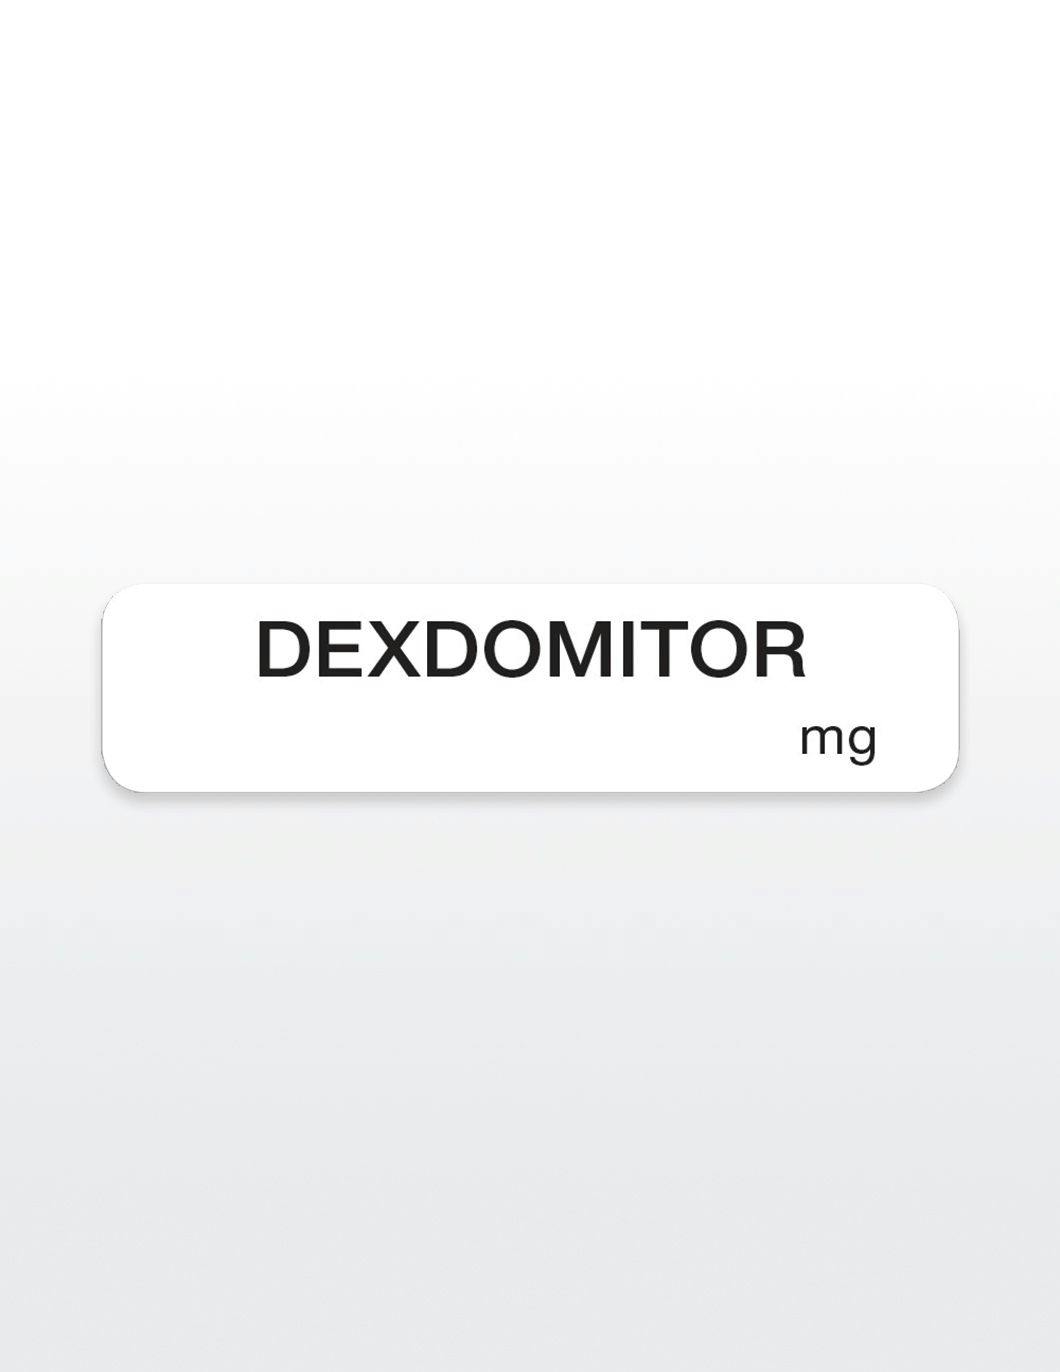 dexdomitor-drug-syringe-stickers